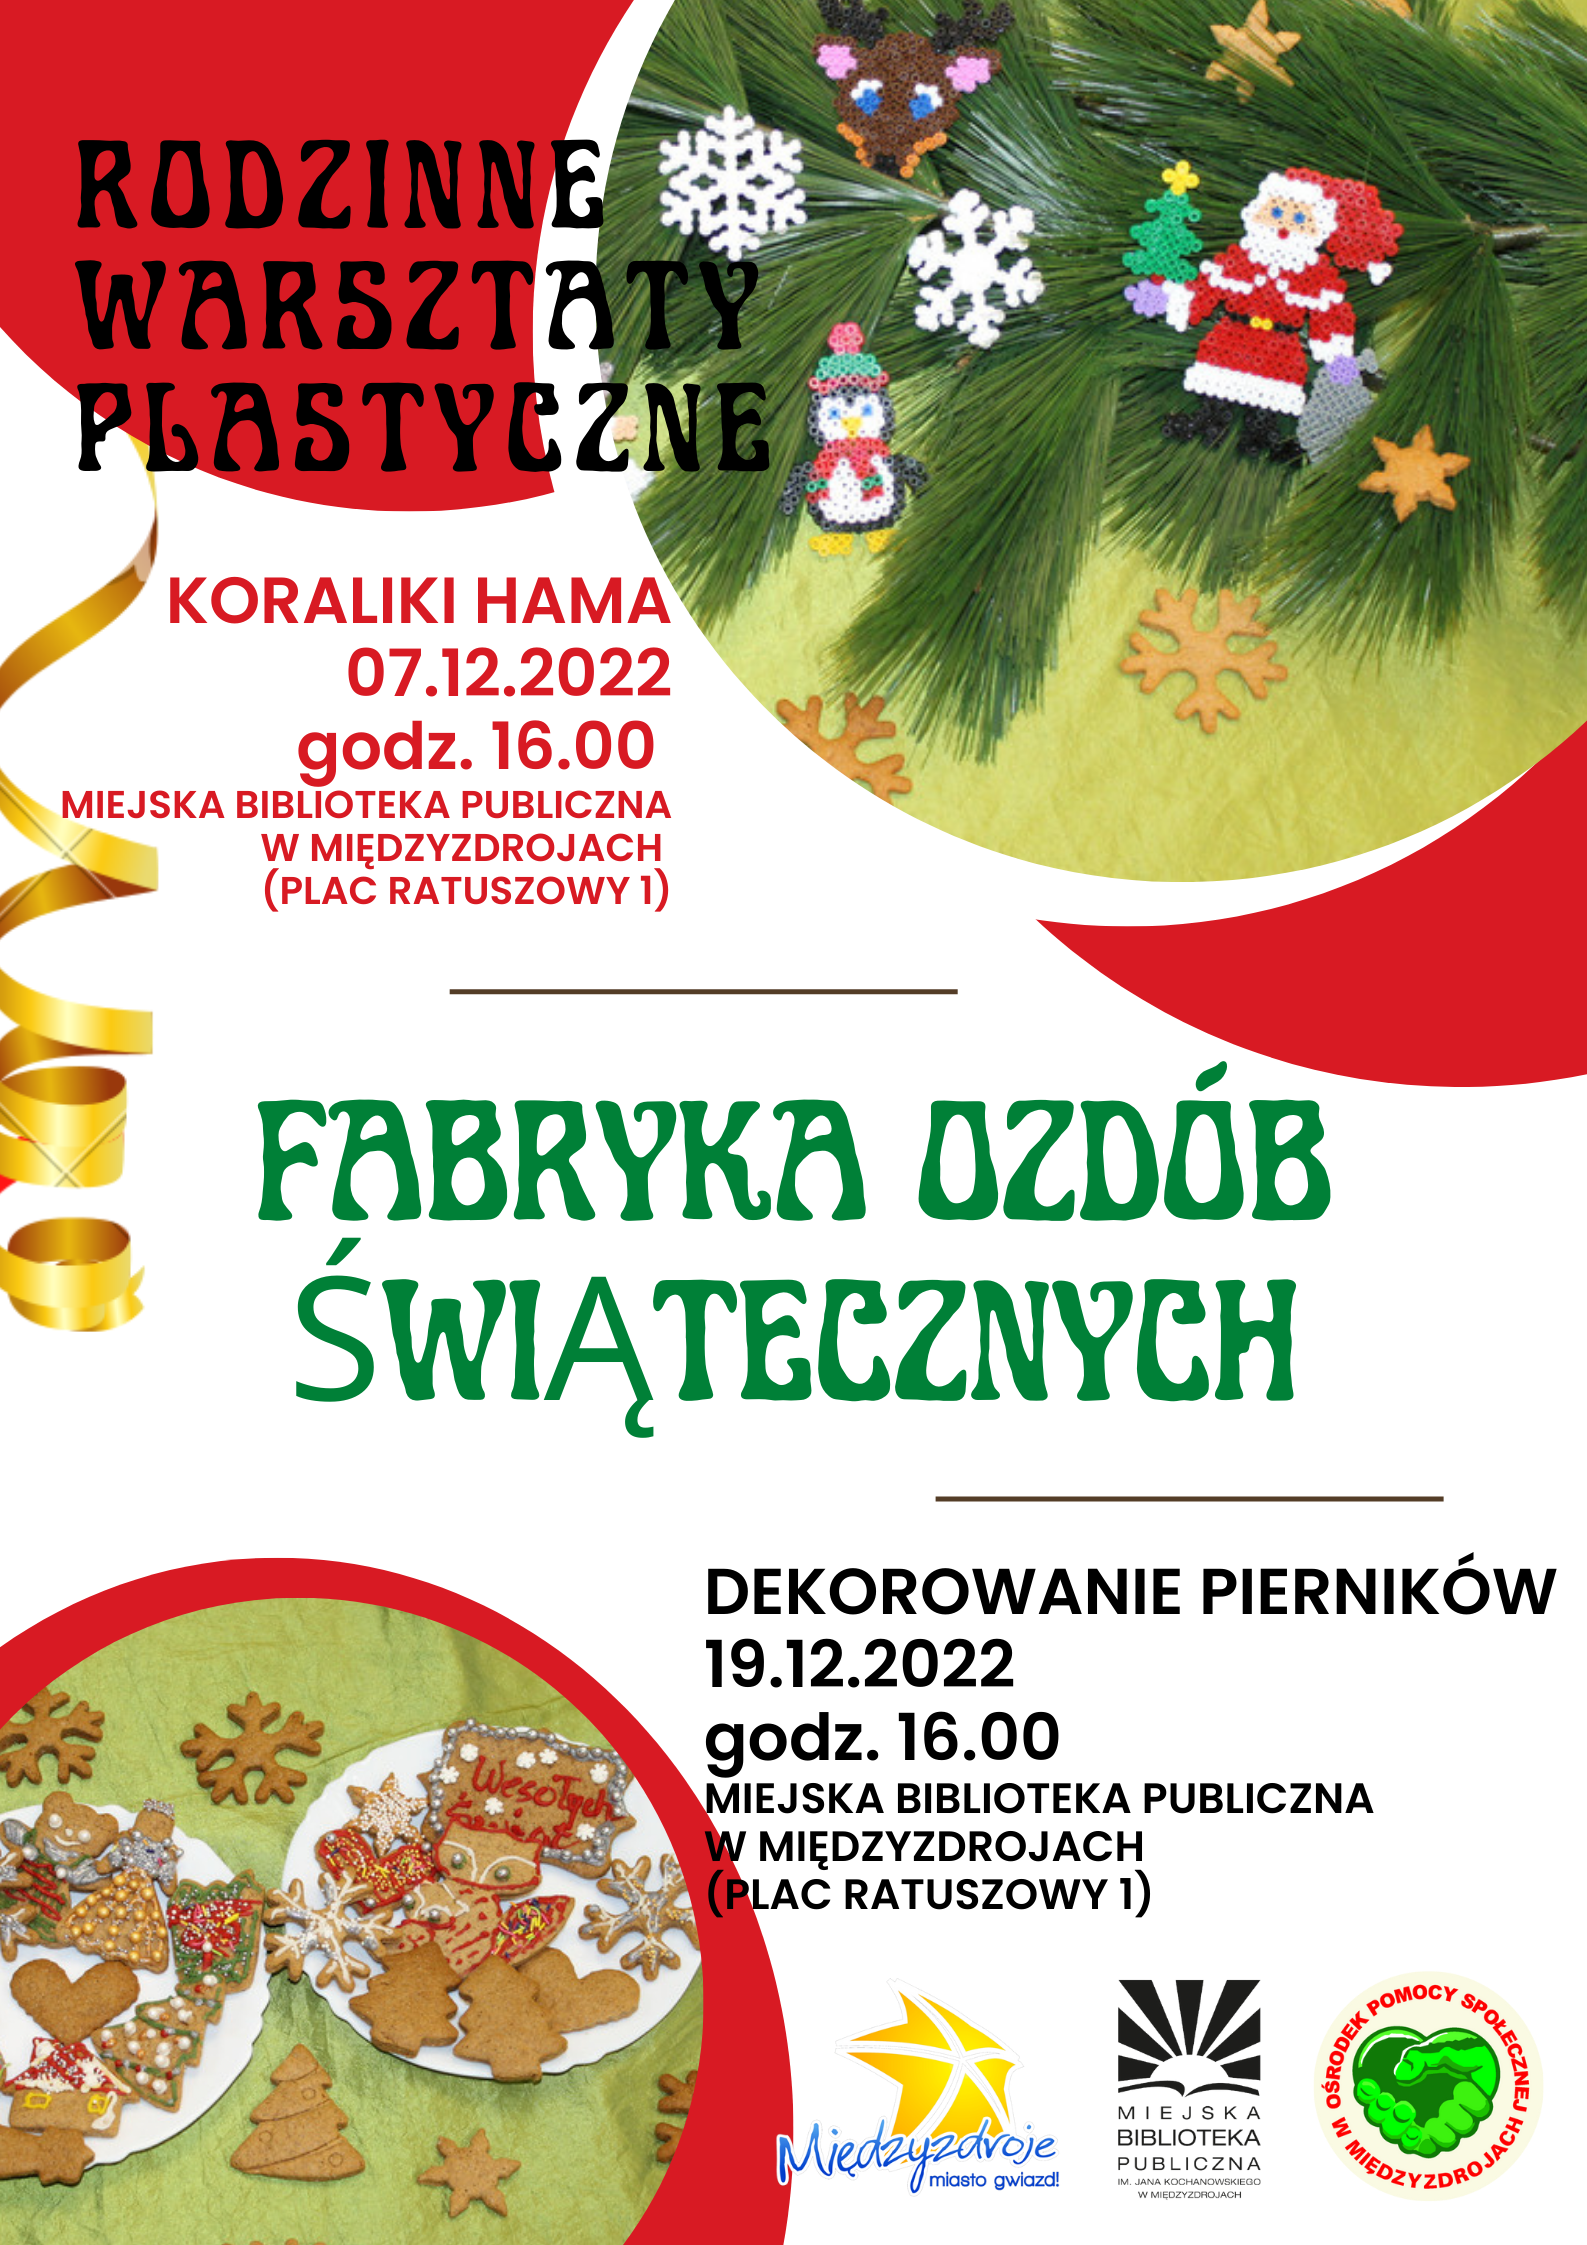 Rodzinne warsztaty plastyczne „Fabryka ozdób świątecznych” 7 grudnia 2022 r. oraz 19 grudnia 2022 r.